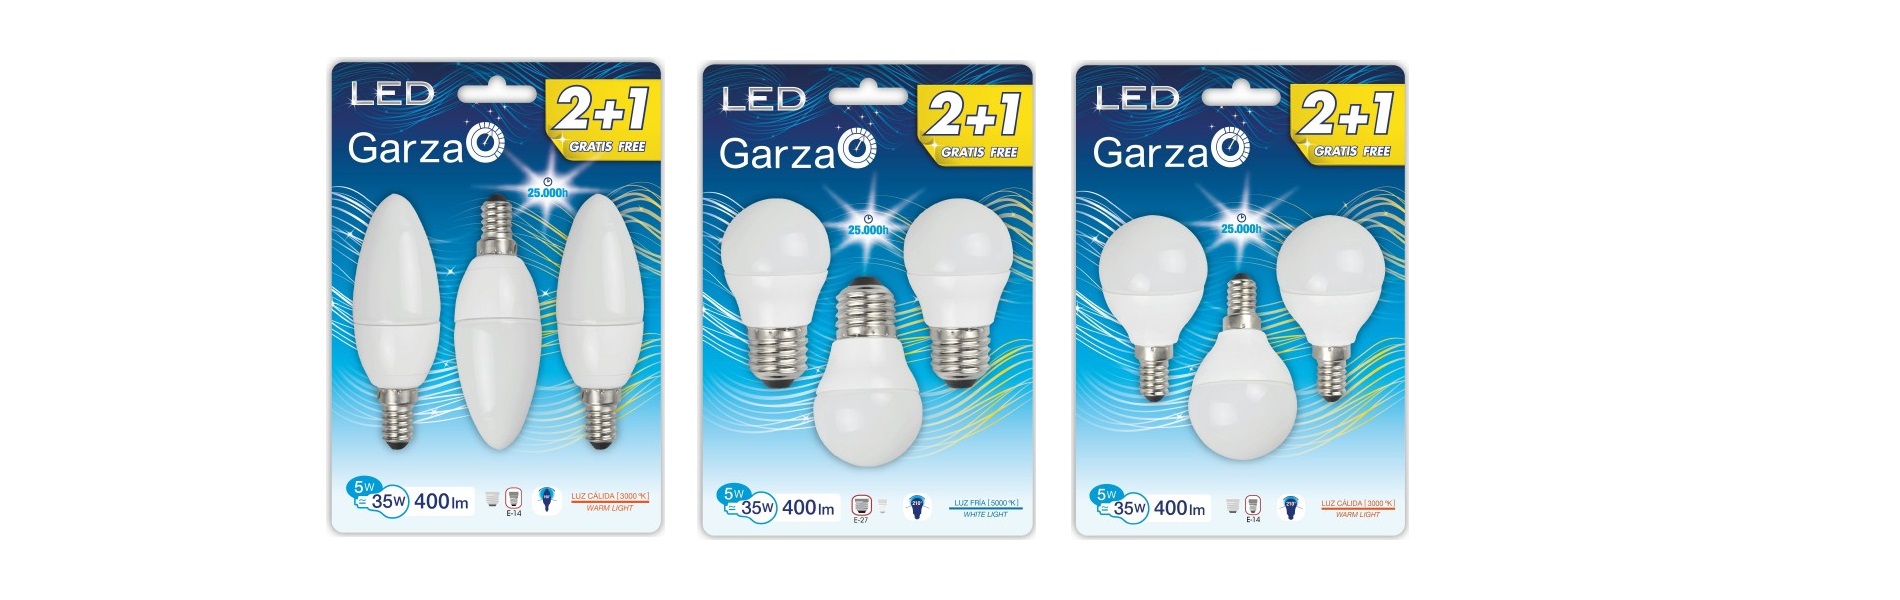 Productos de Garza LED en MAGHENS NETWORK S.L.